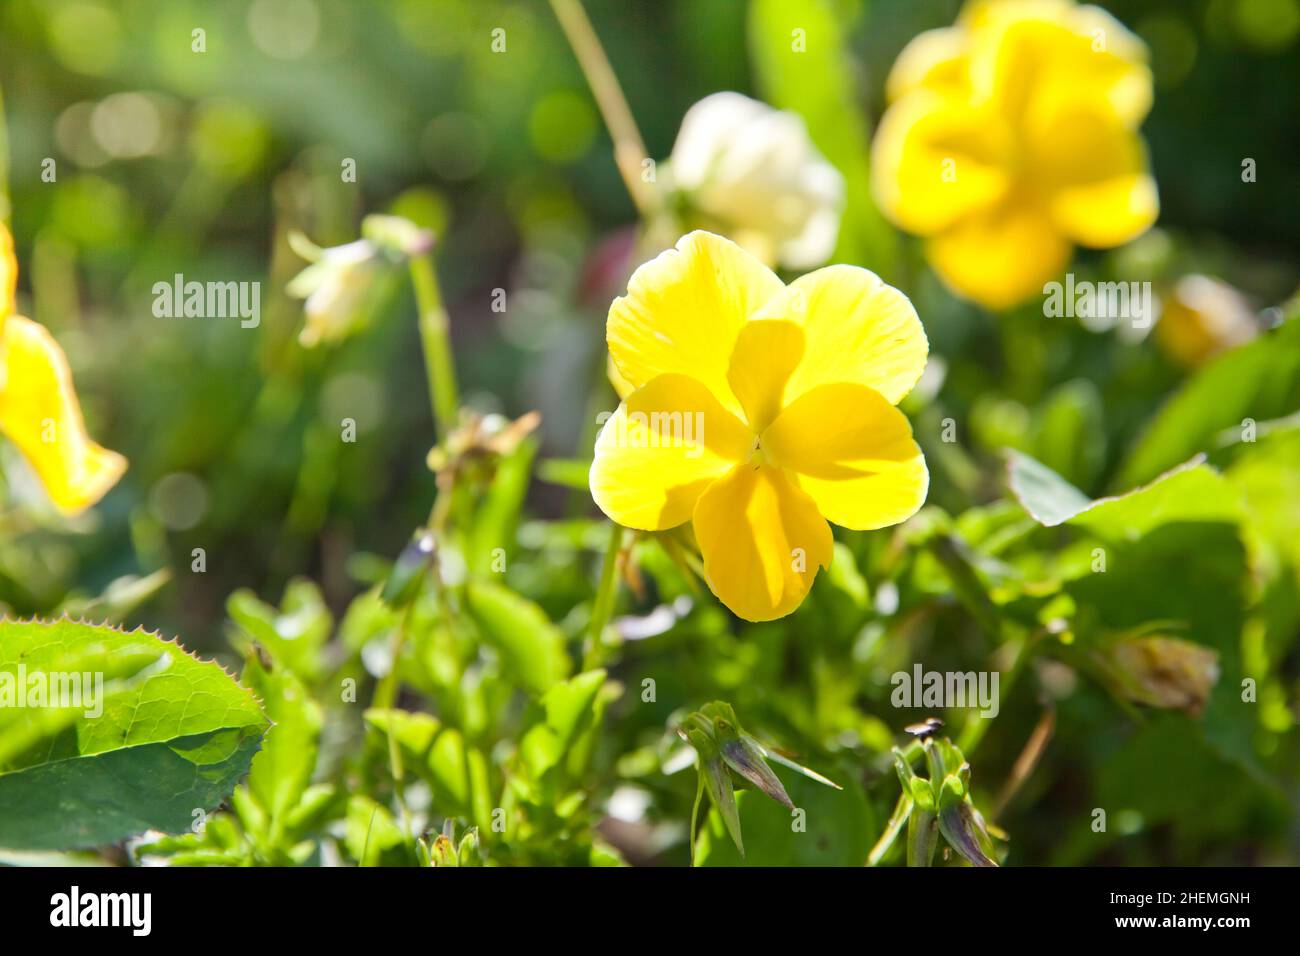 fleur de pansy.La pansy de jardin est un type de plante hybride à grande fleur cultivée comme une fleur de jardin. Banque D'Images